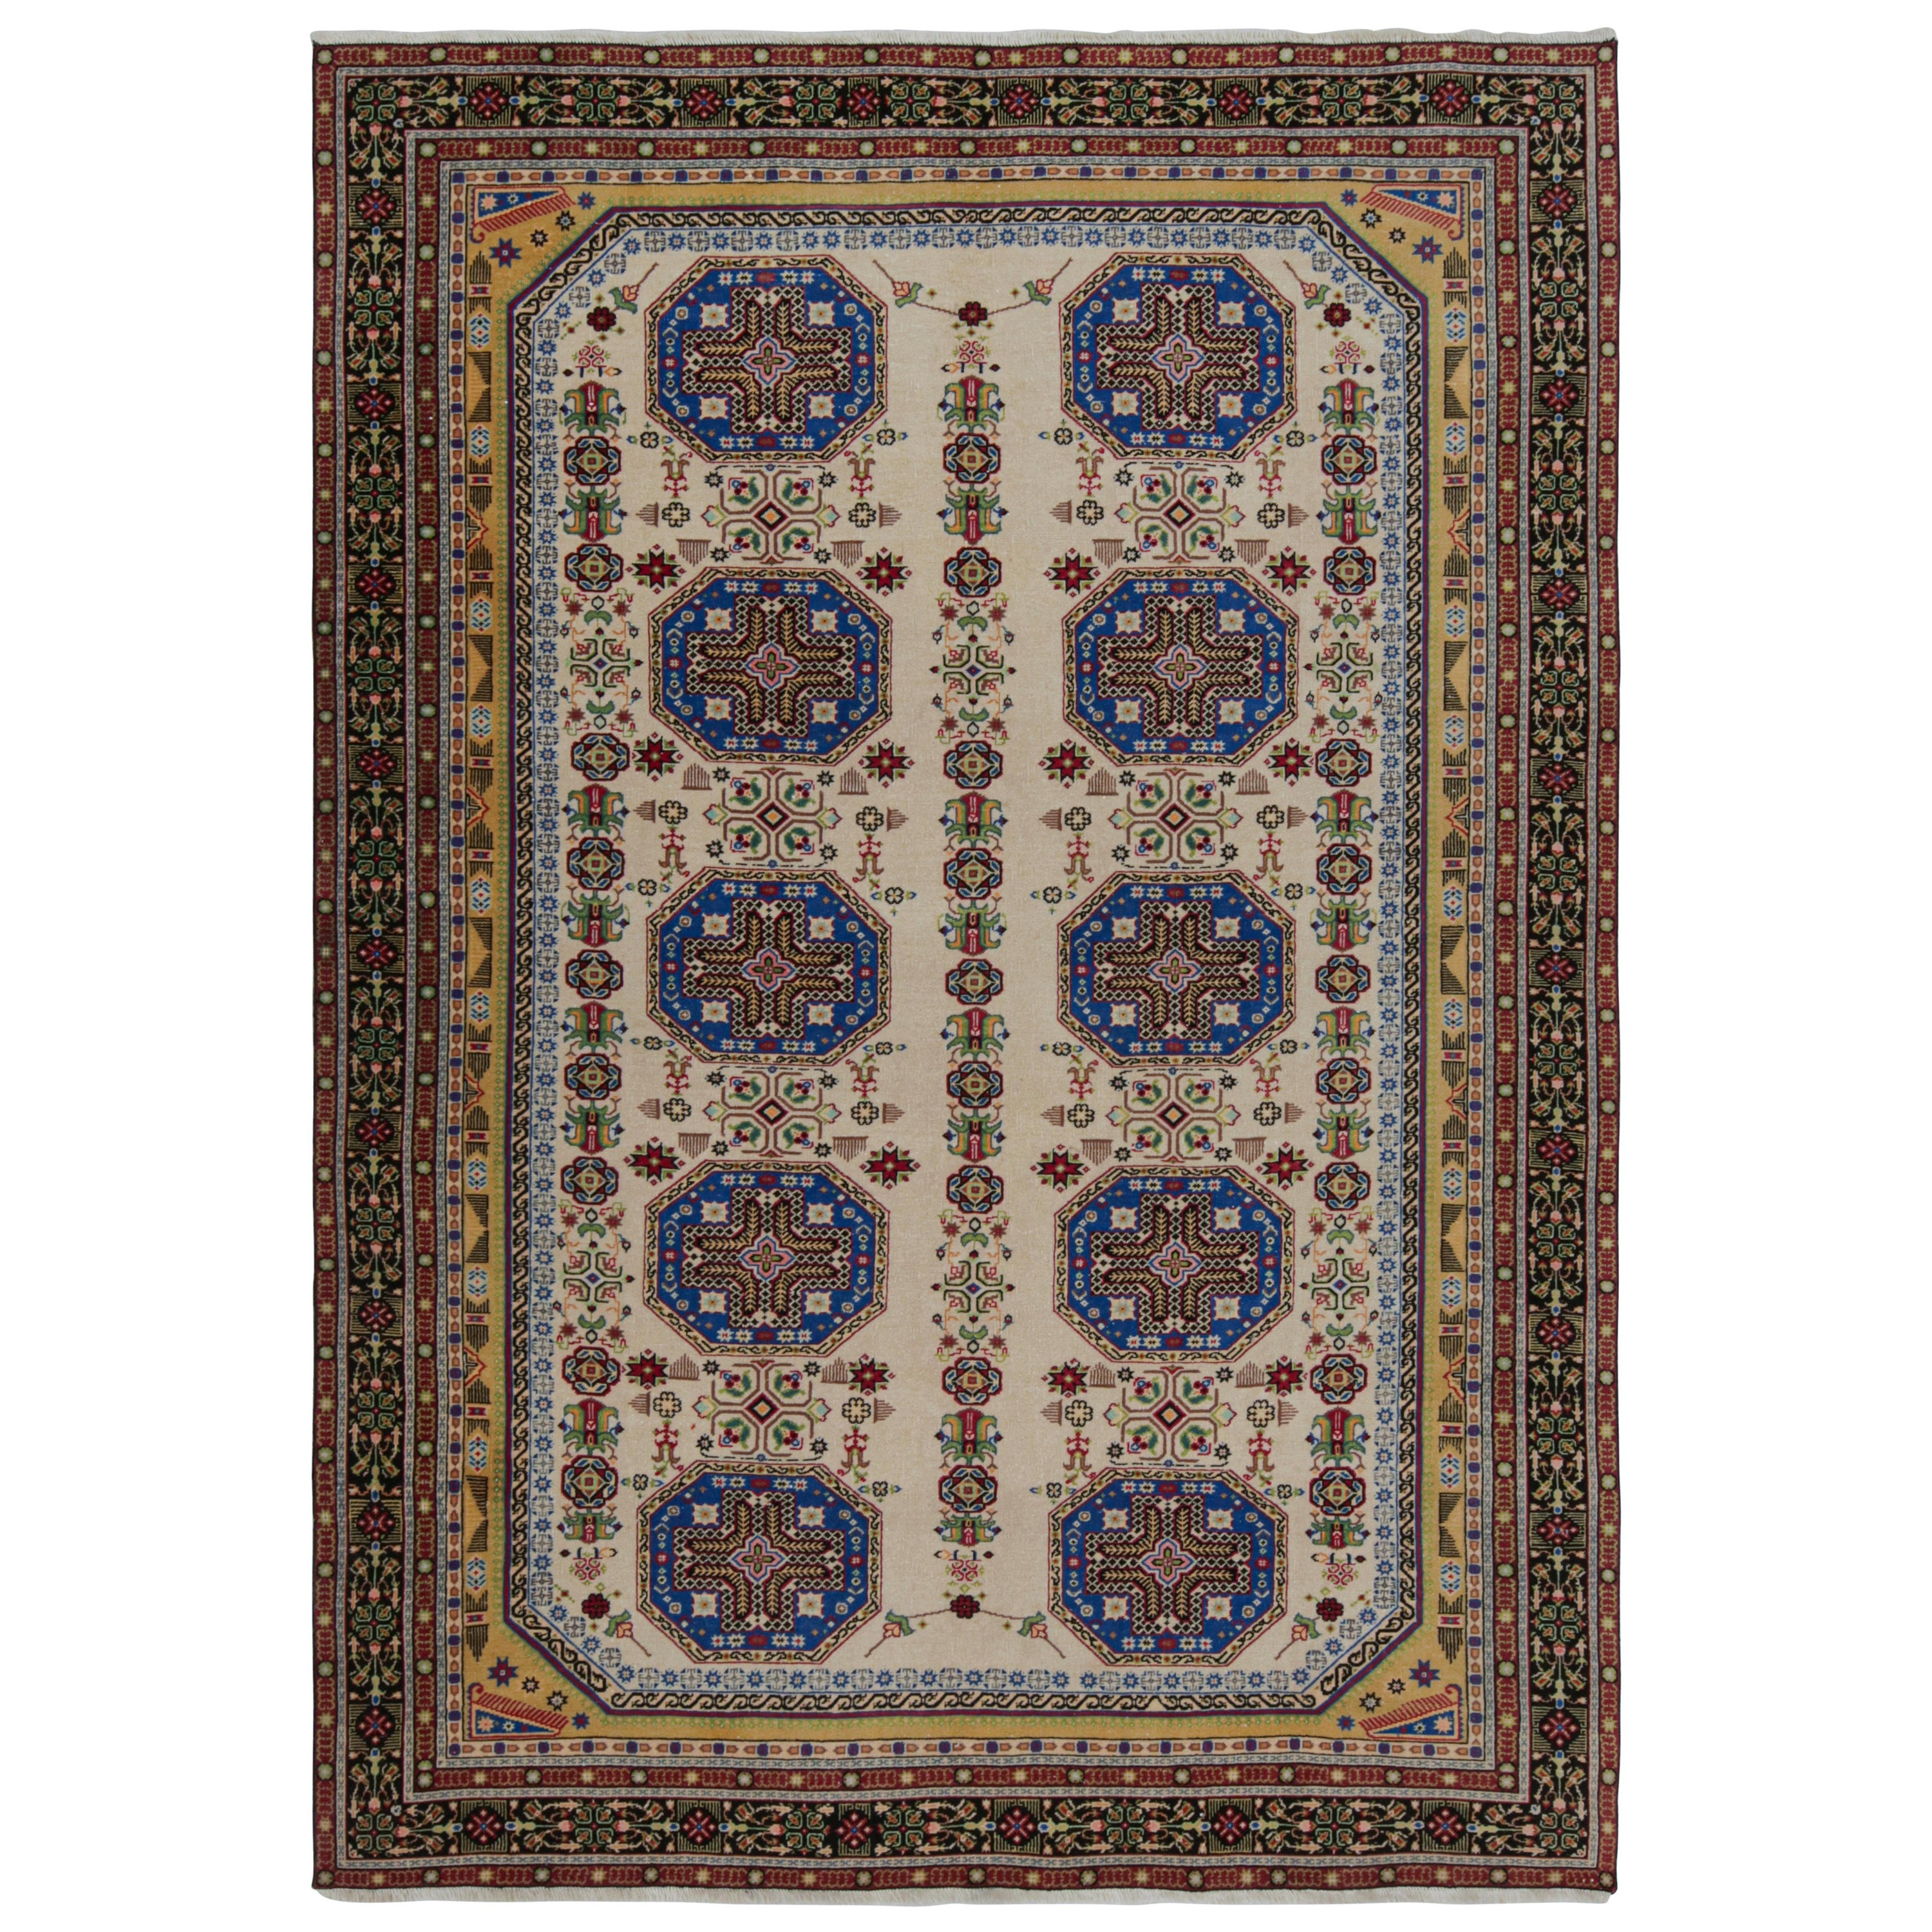 Vintage Hereke rug in Beige, Blue and Gold Geometric Patterns by Rug & Kilim For Sale